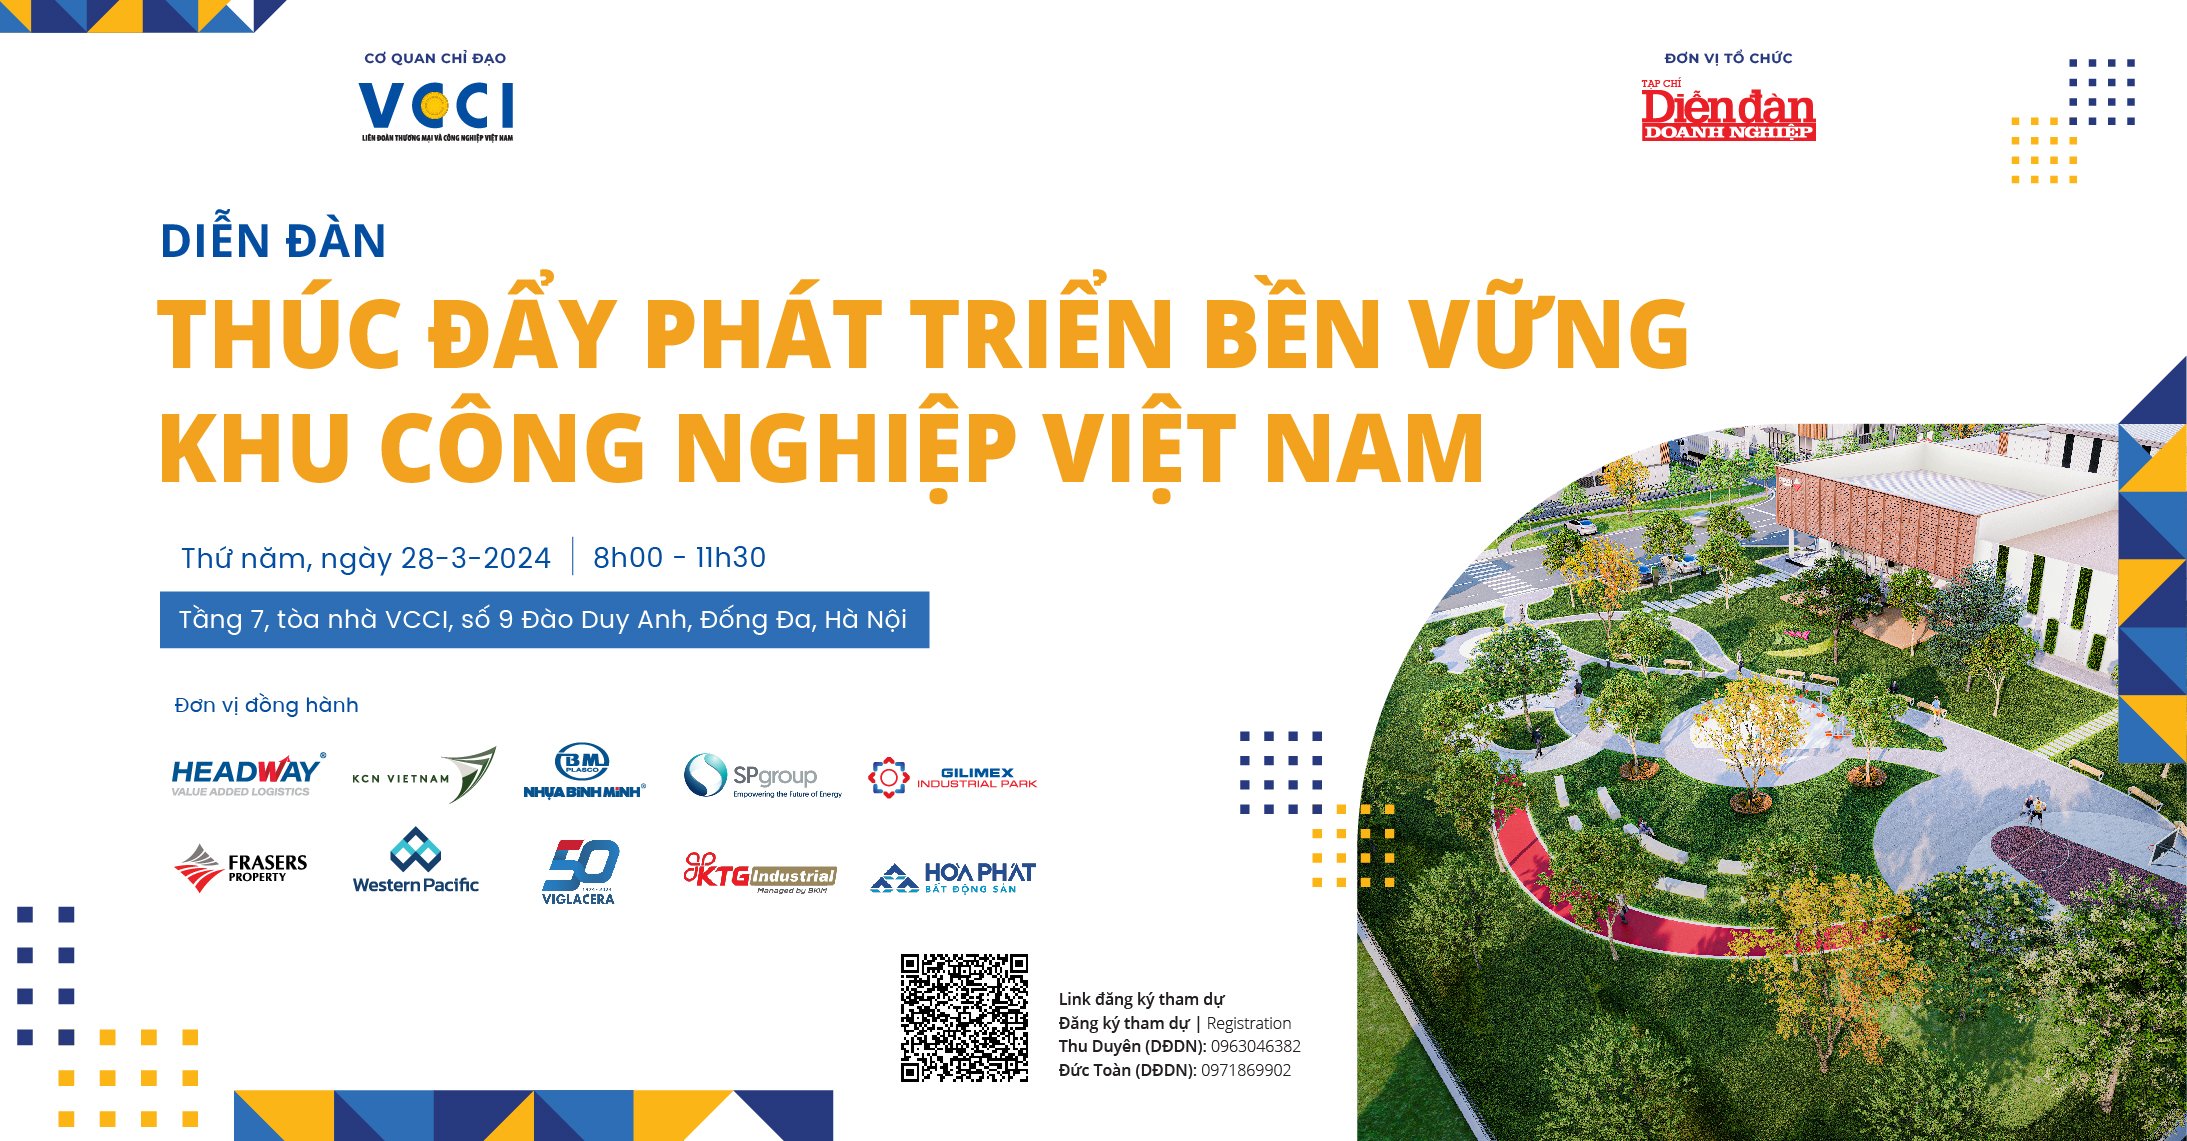 Diễn đàn “Thúc đẩy phát triển bền vững khu công nghiệp Việt Nam”